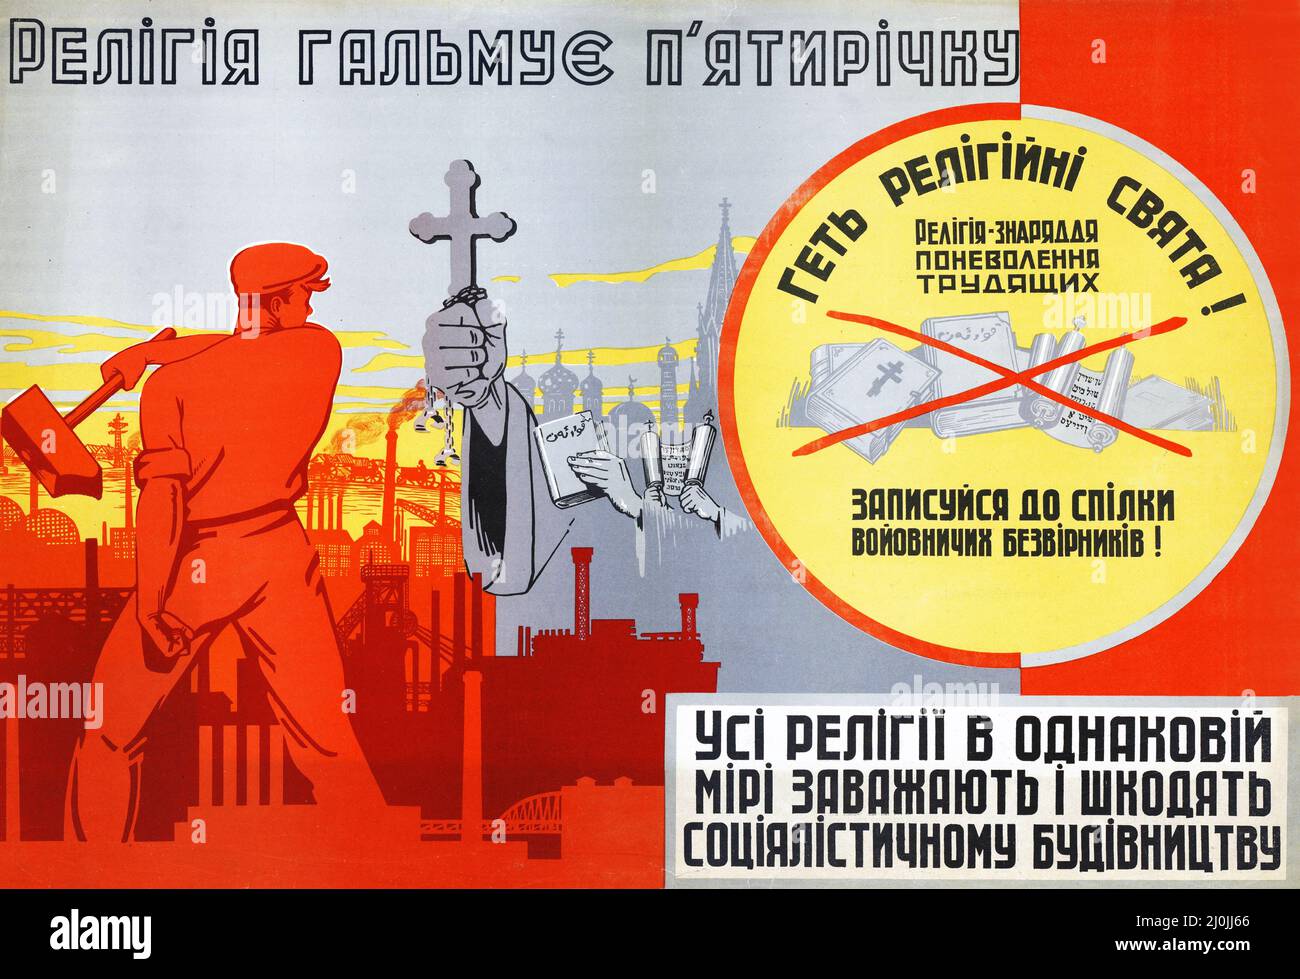 Propaganda rusa - afiche ruso clásico - afiche antireligioso soviético en ucraniano. Finales de 1920s a principios de 1930s. Foto de stock